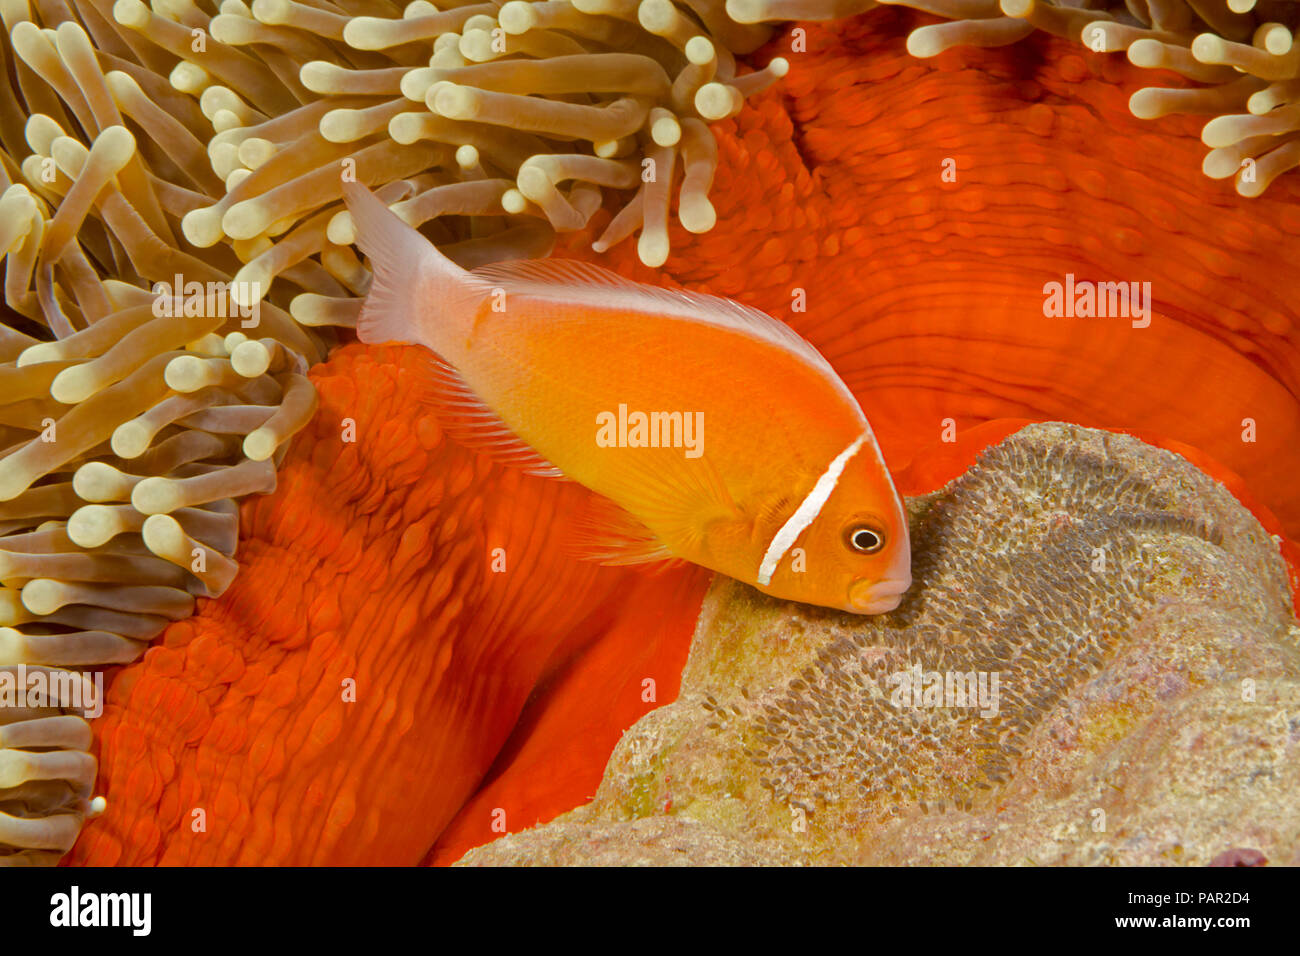 Questo comune, anemonefish Amphiprion perideraion, è più spesso associato con l'anemone, Heteractis magnifica, come illustrato qui insieme con esso Foto Stock